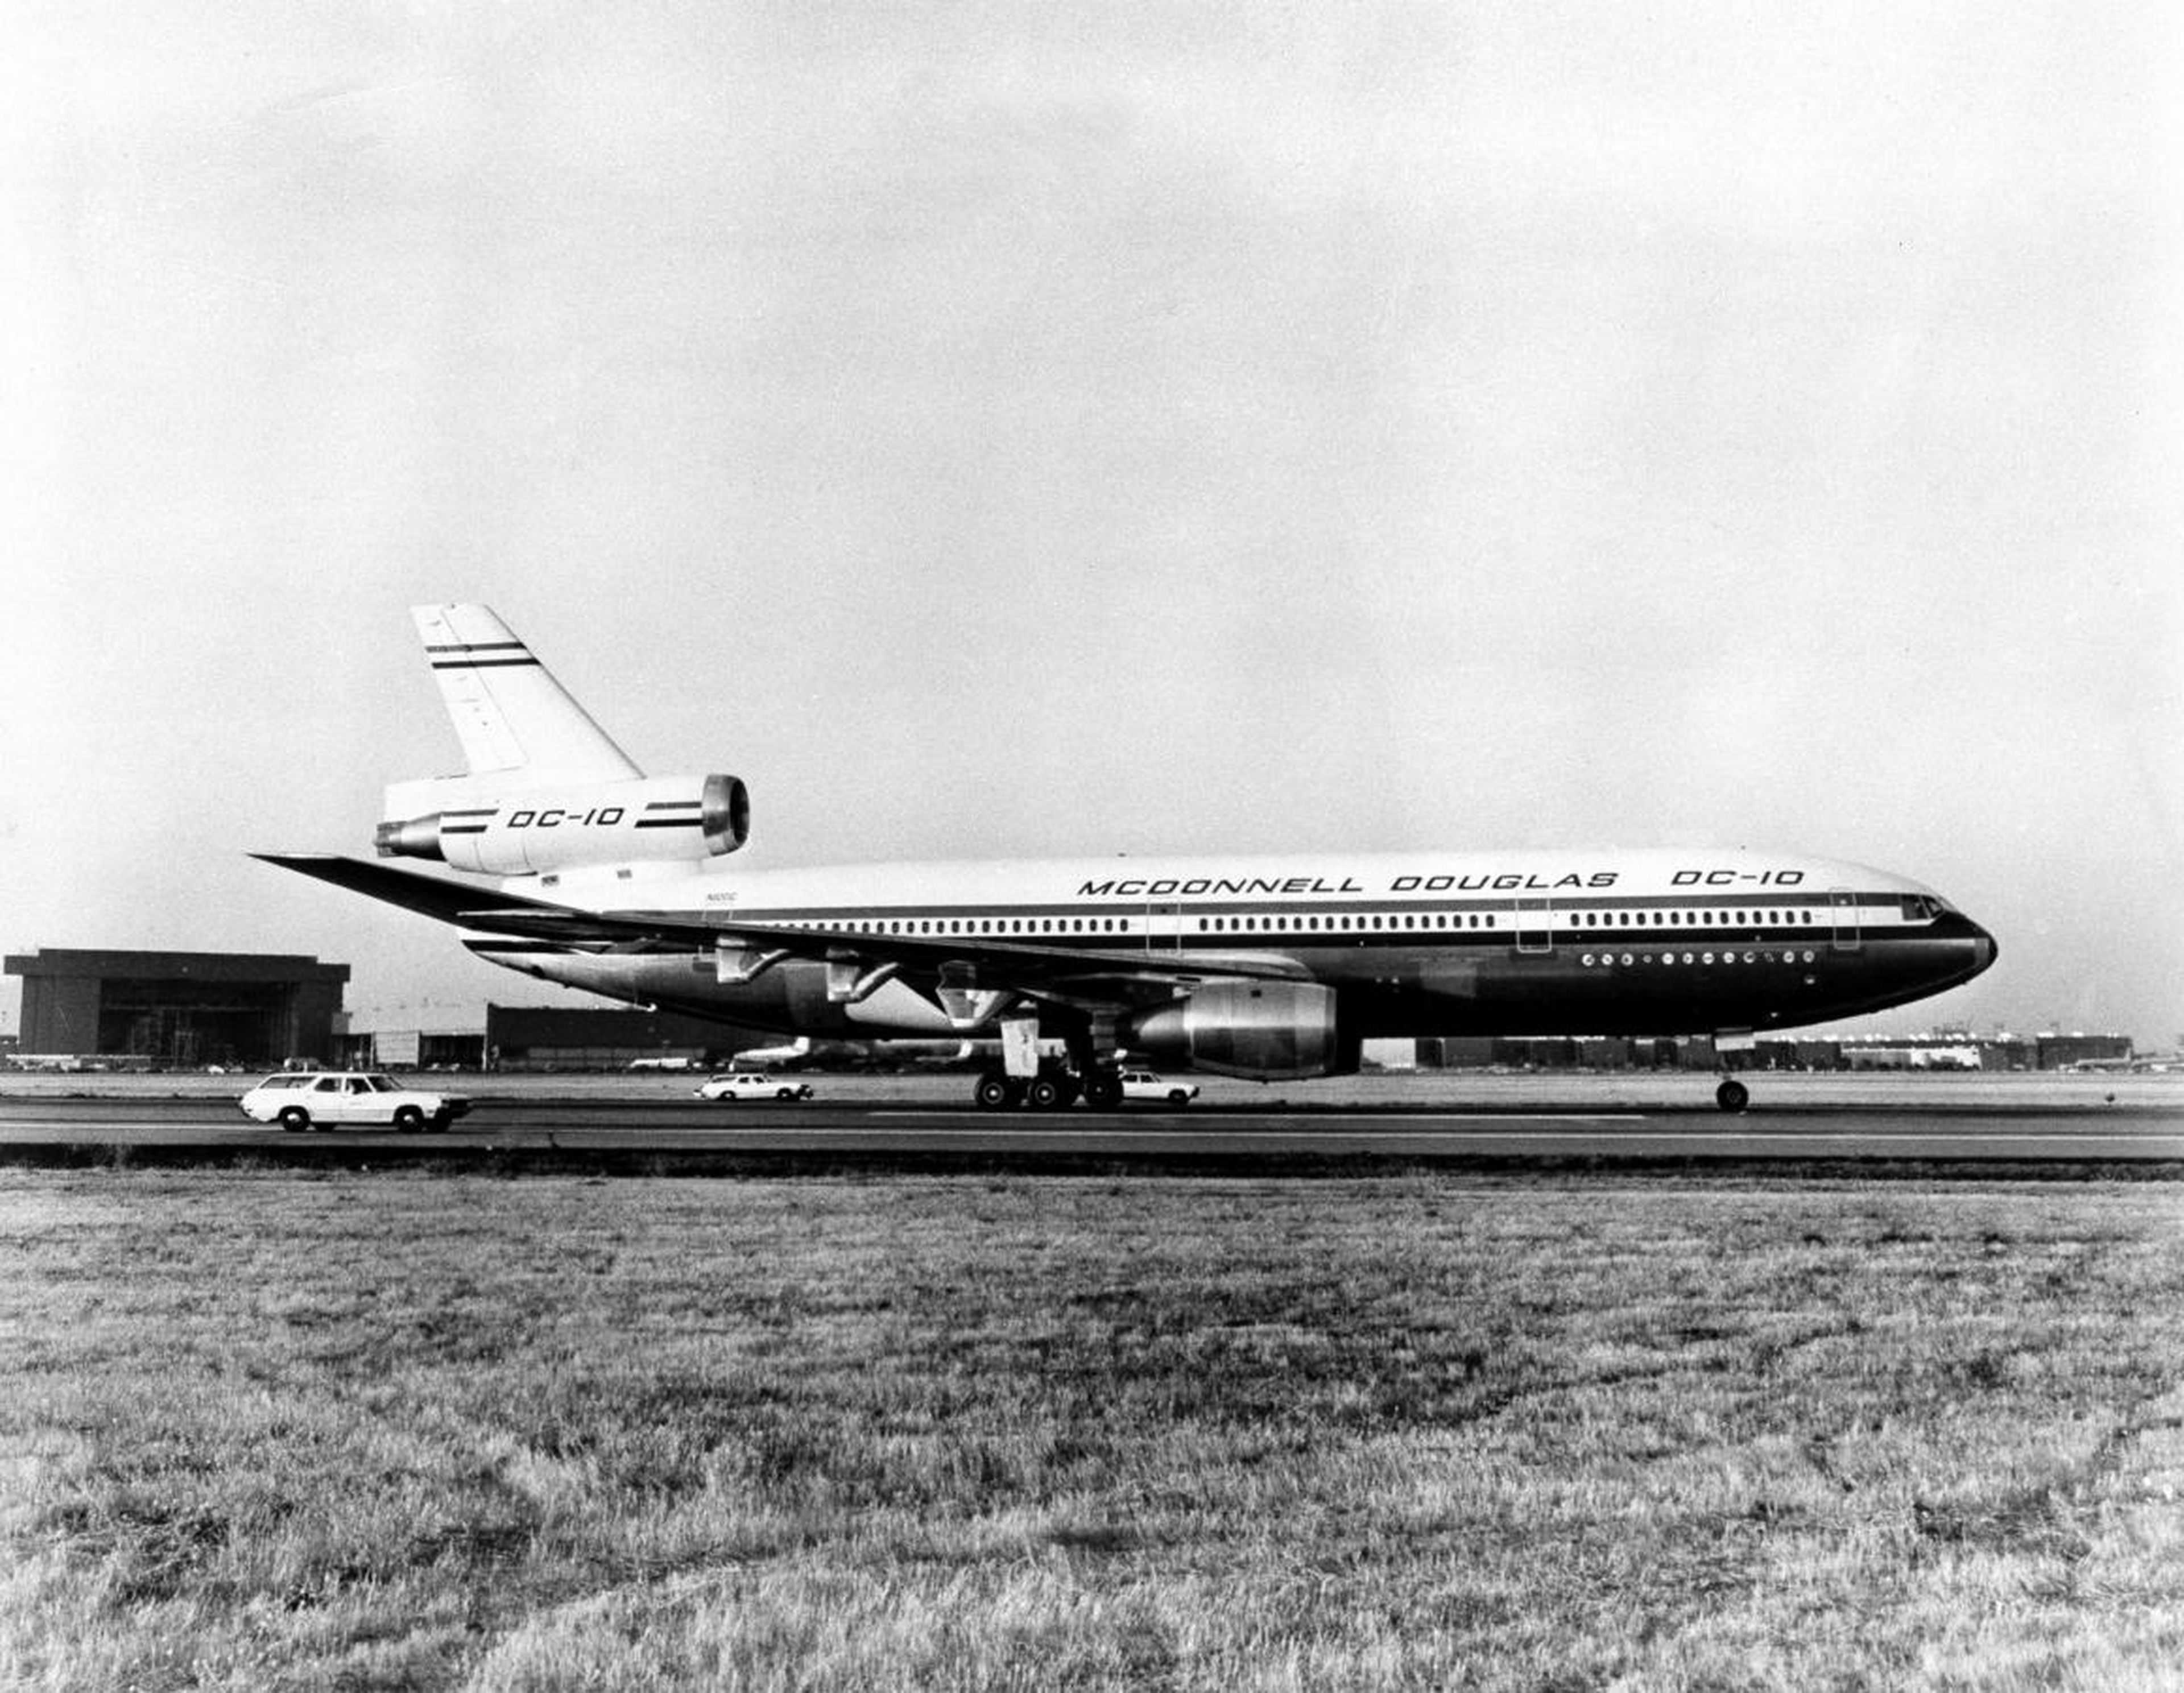 ... the McDonnell Douglas DC-10.